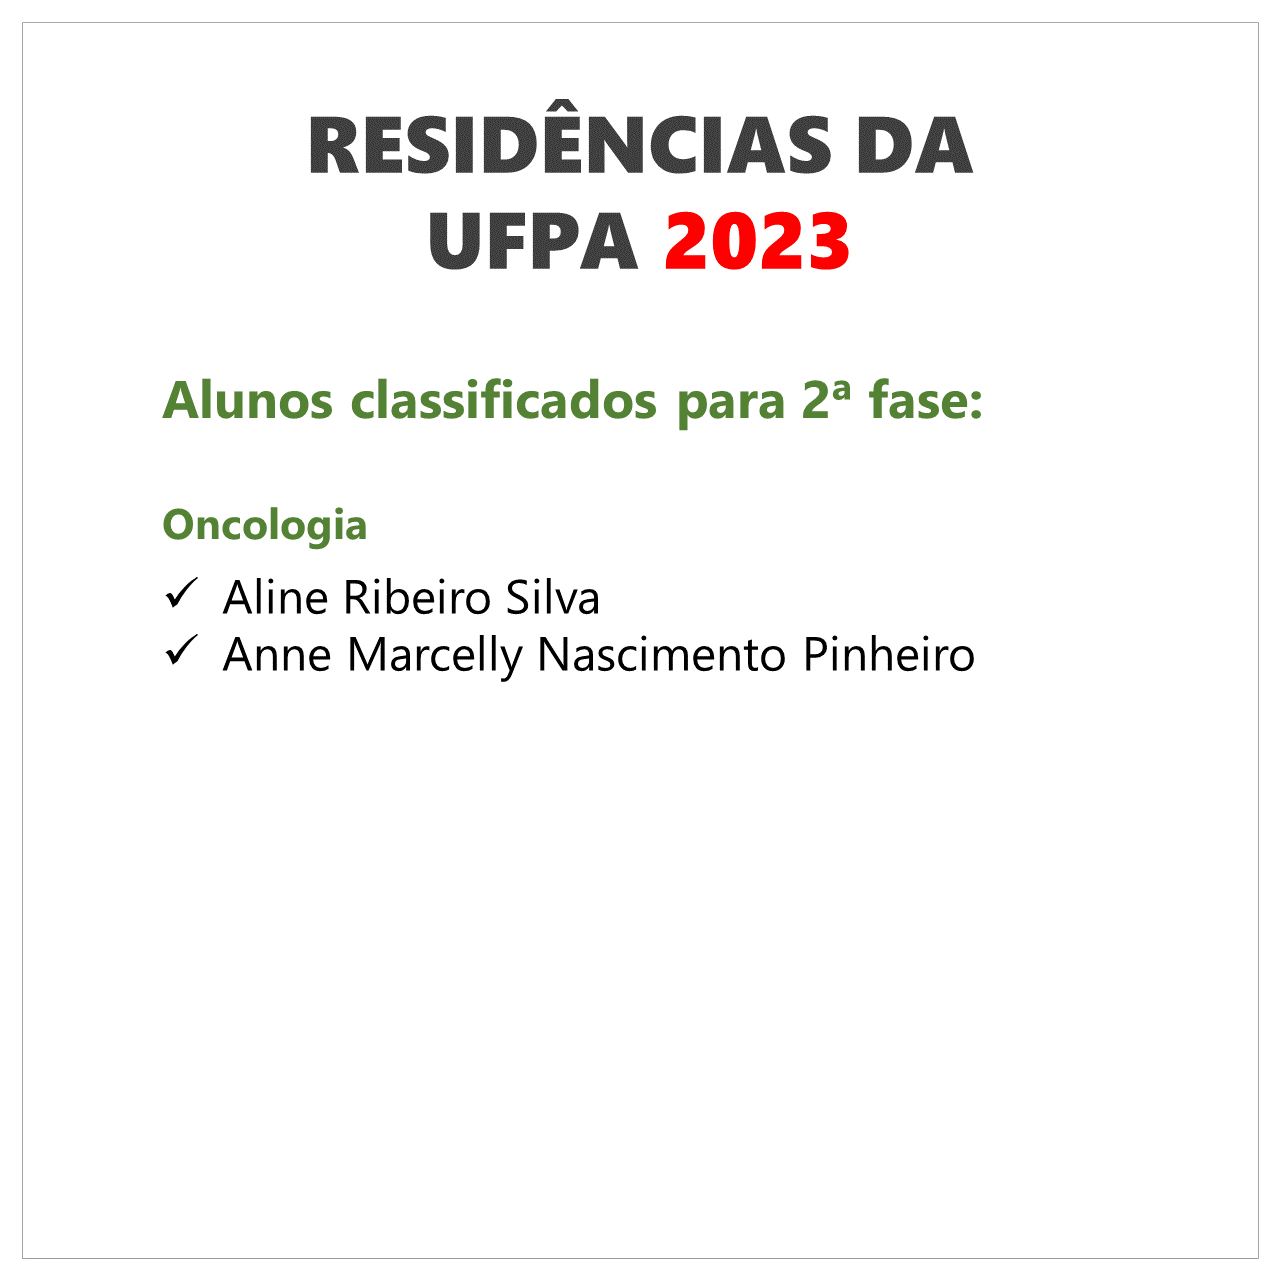 ufpa 2023